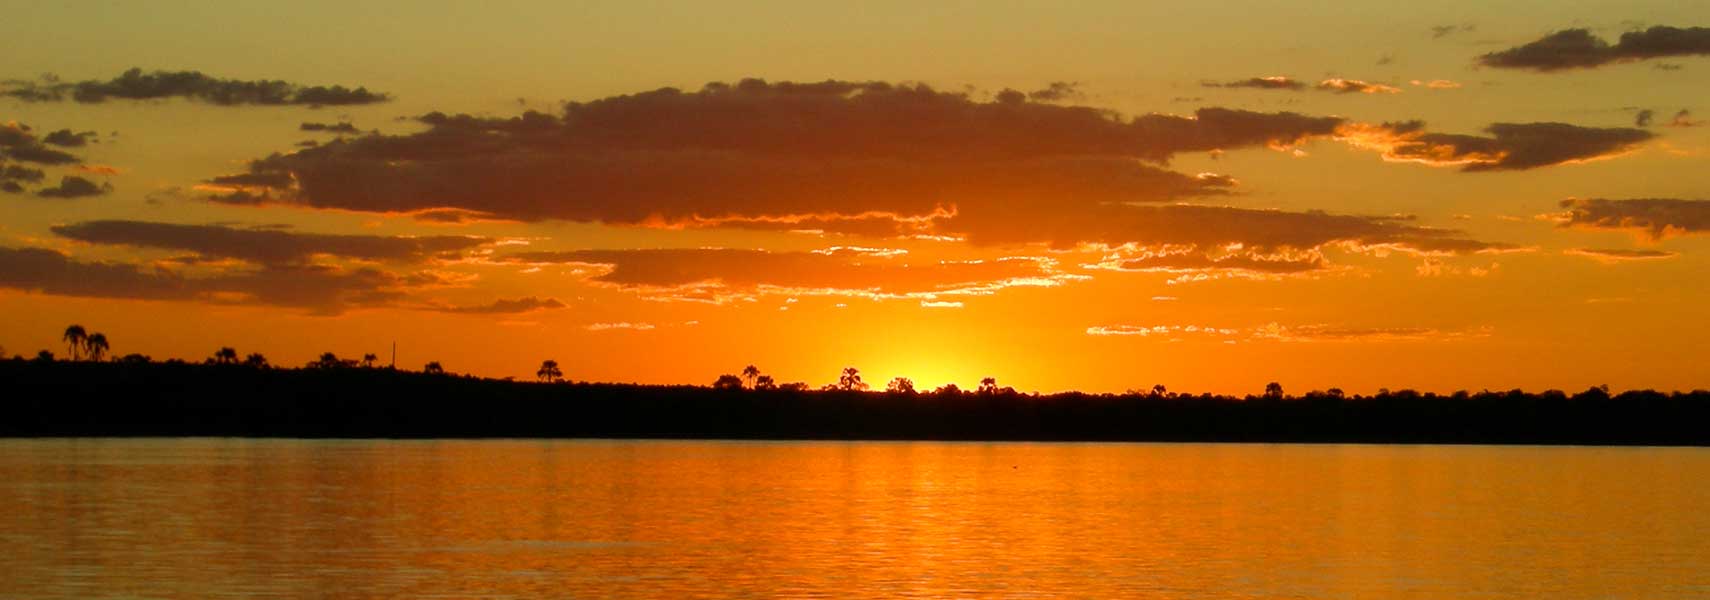 Sunset over Zambezi River, Zambia